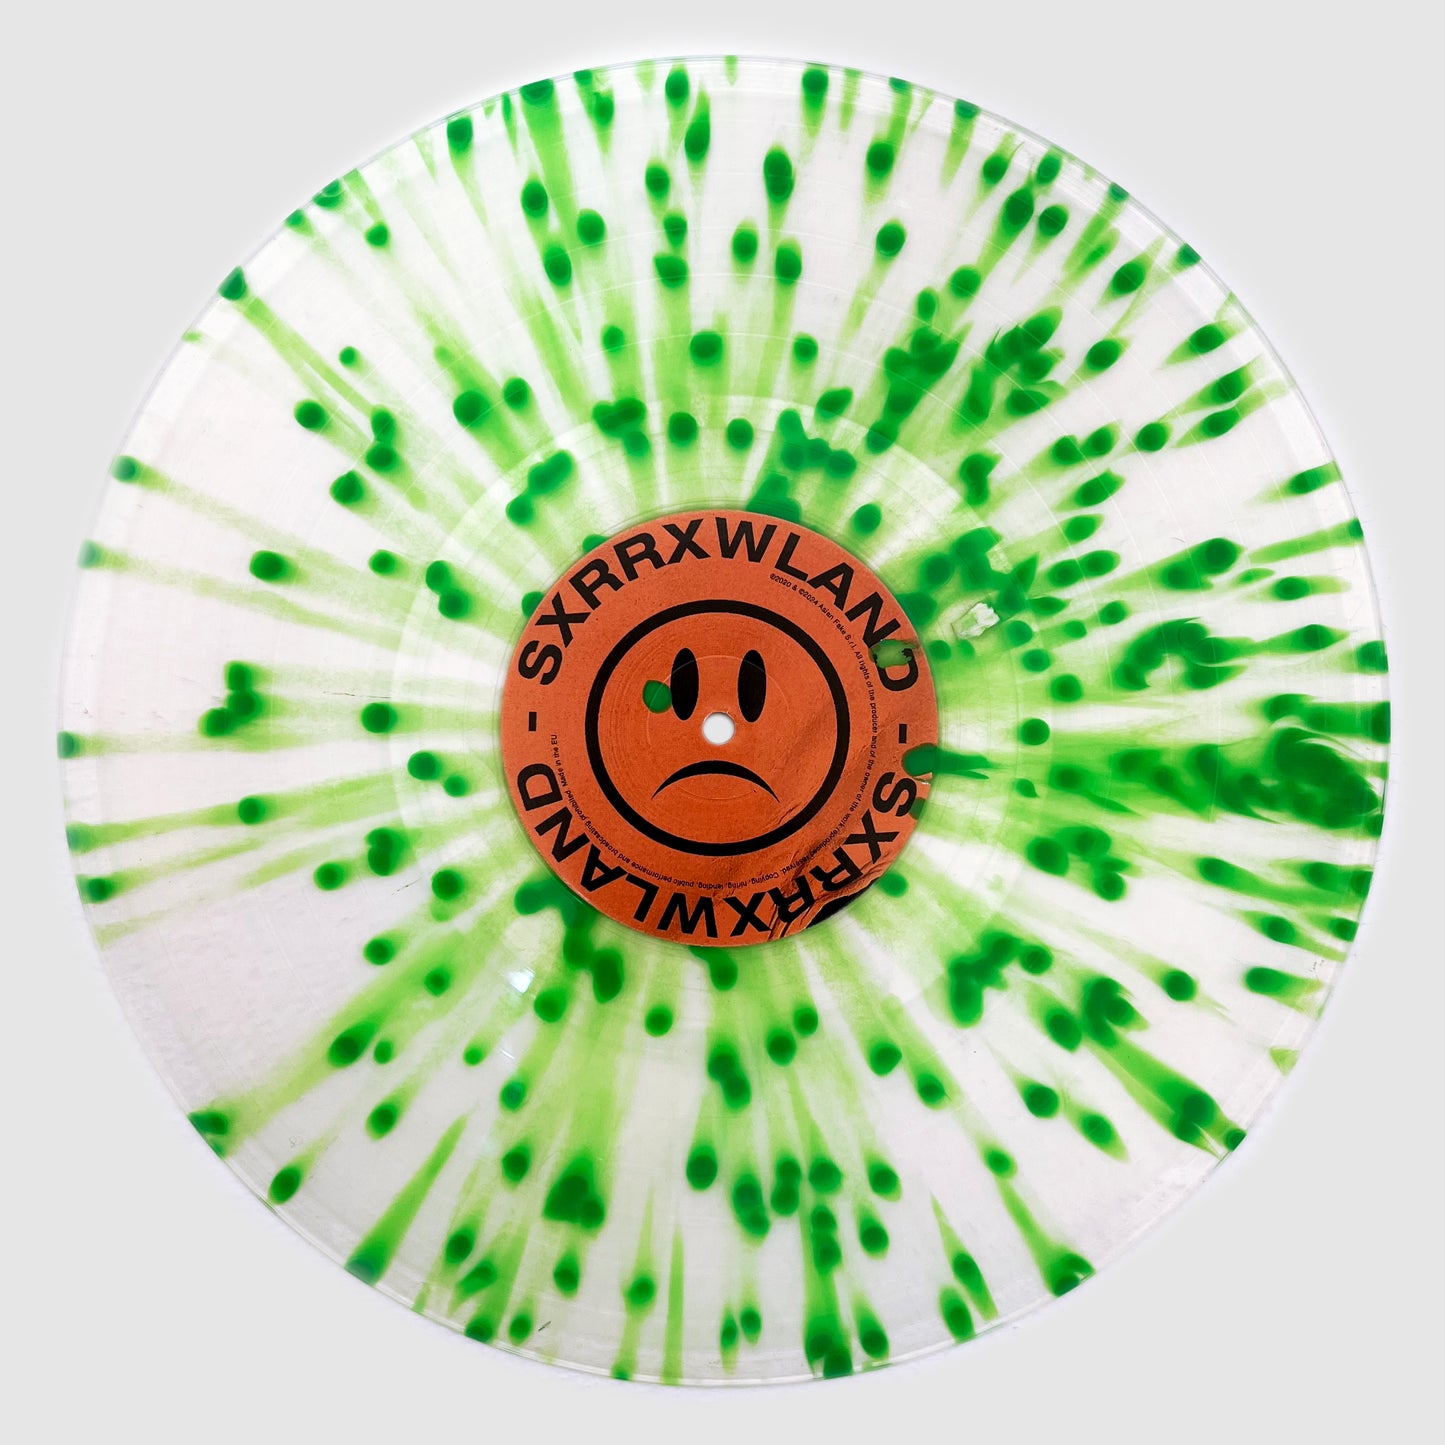 SXRRXWLAND / BMPGP + BONE - Vinyl Splatter LTD